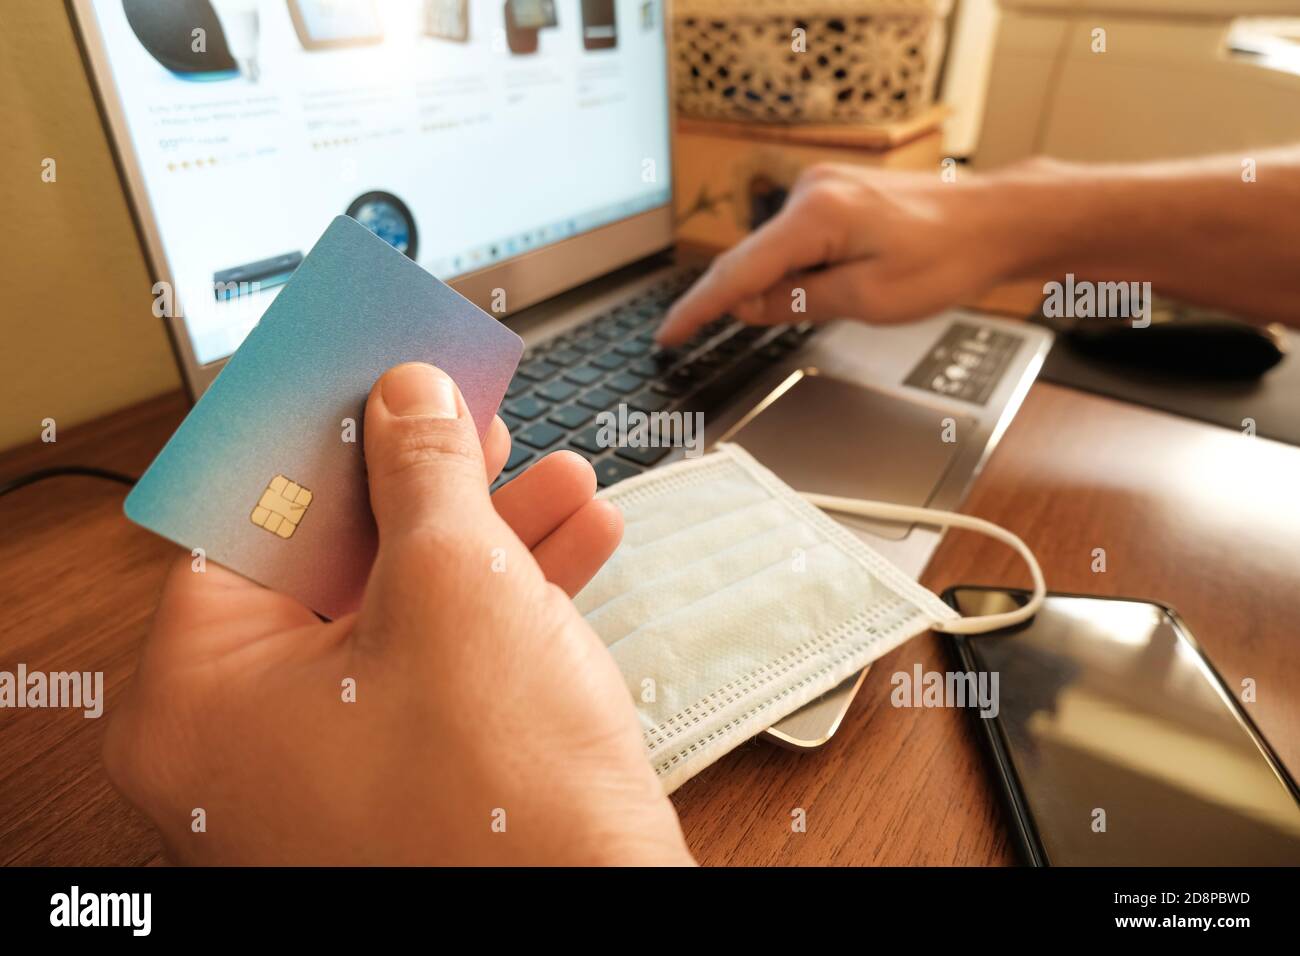 Rome,italie - octobre 30 2020: Homme utiliser la carte de crédit de visa pour le paiement web sur ordinateur portable, commerce électronique technique Banque D'Images